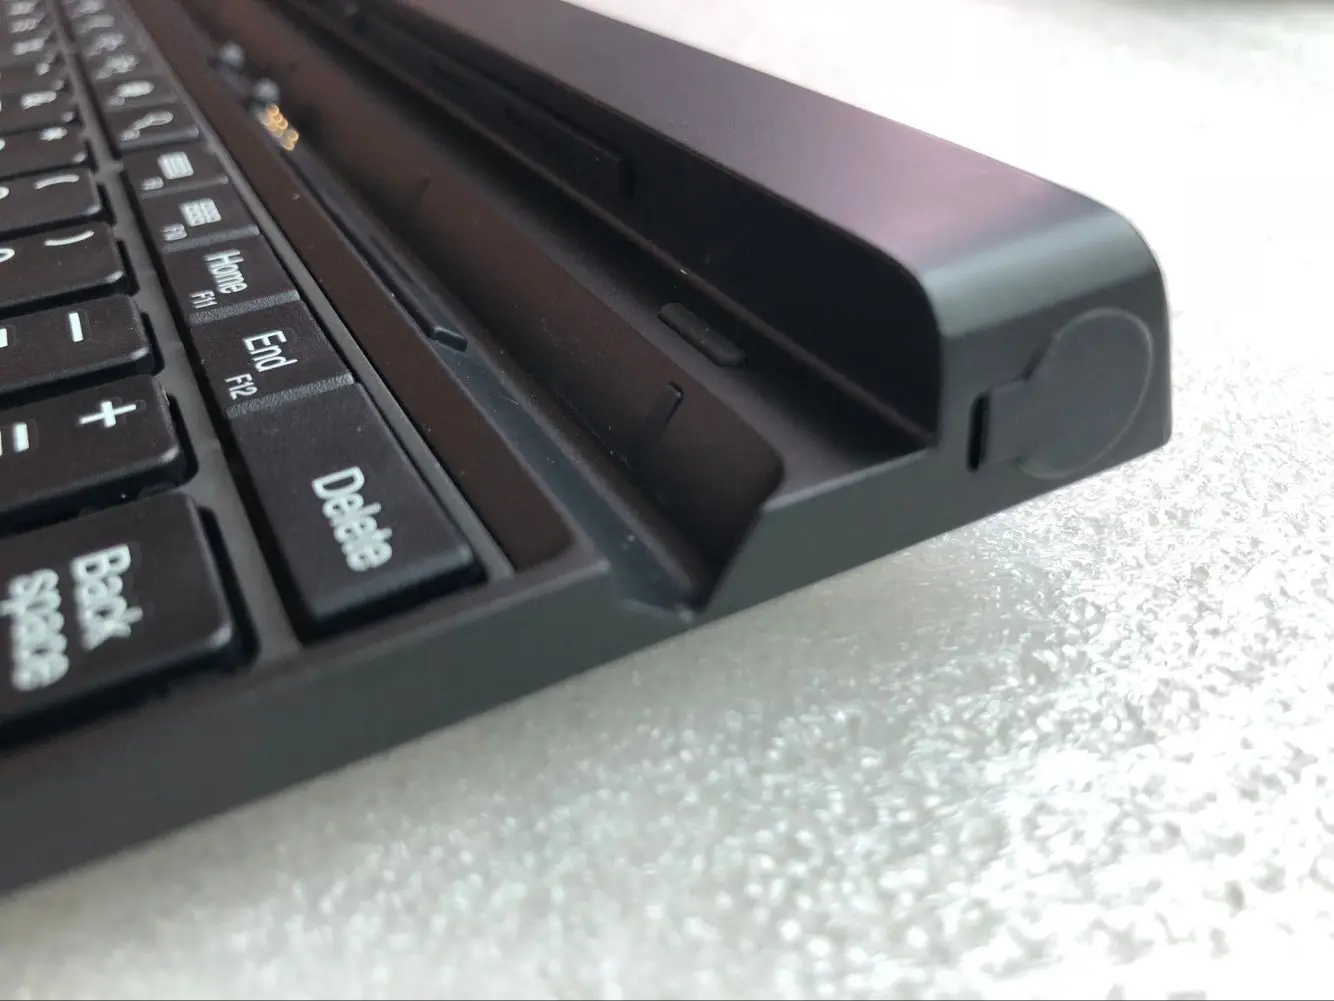 Новый оригинальный ноутбук клавиатура док-станция для lenovo Thinkpad 10 ультрабук английский США ЕС раскладка 4X30E68102